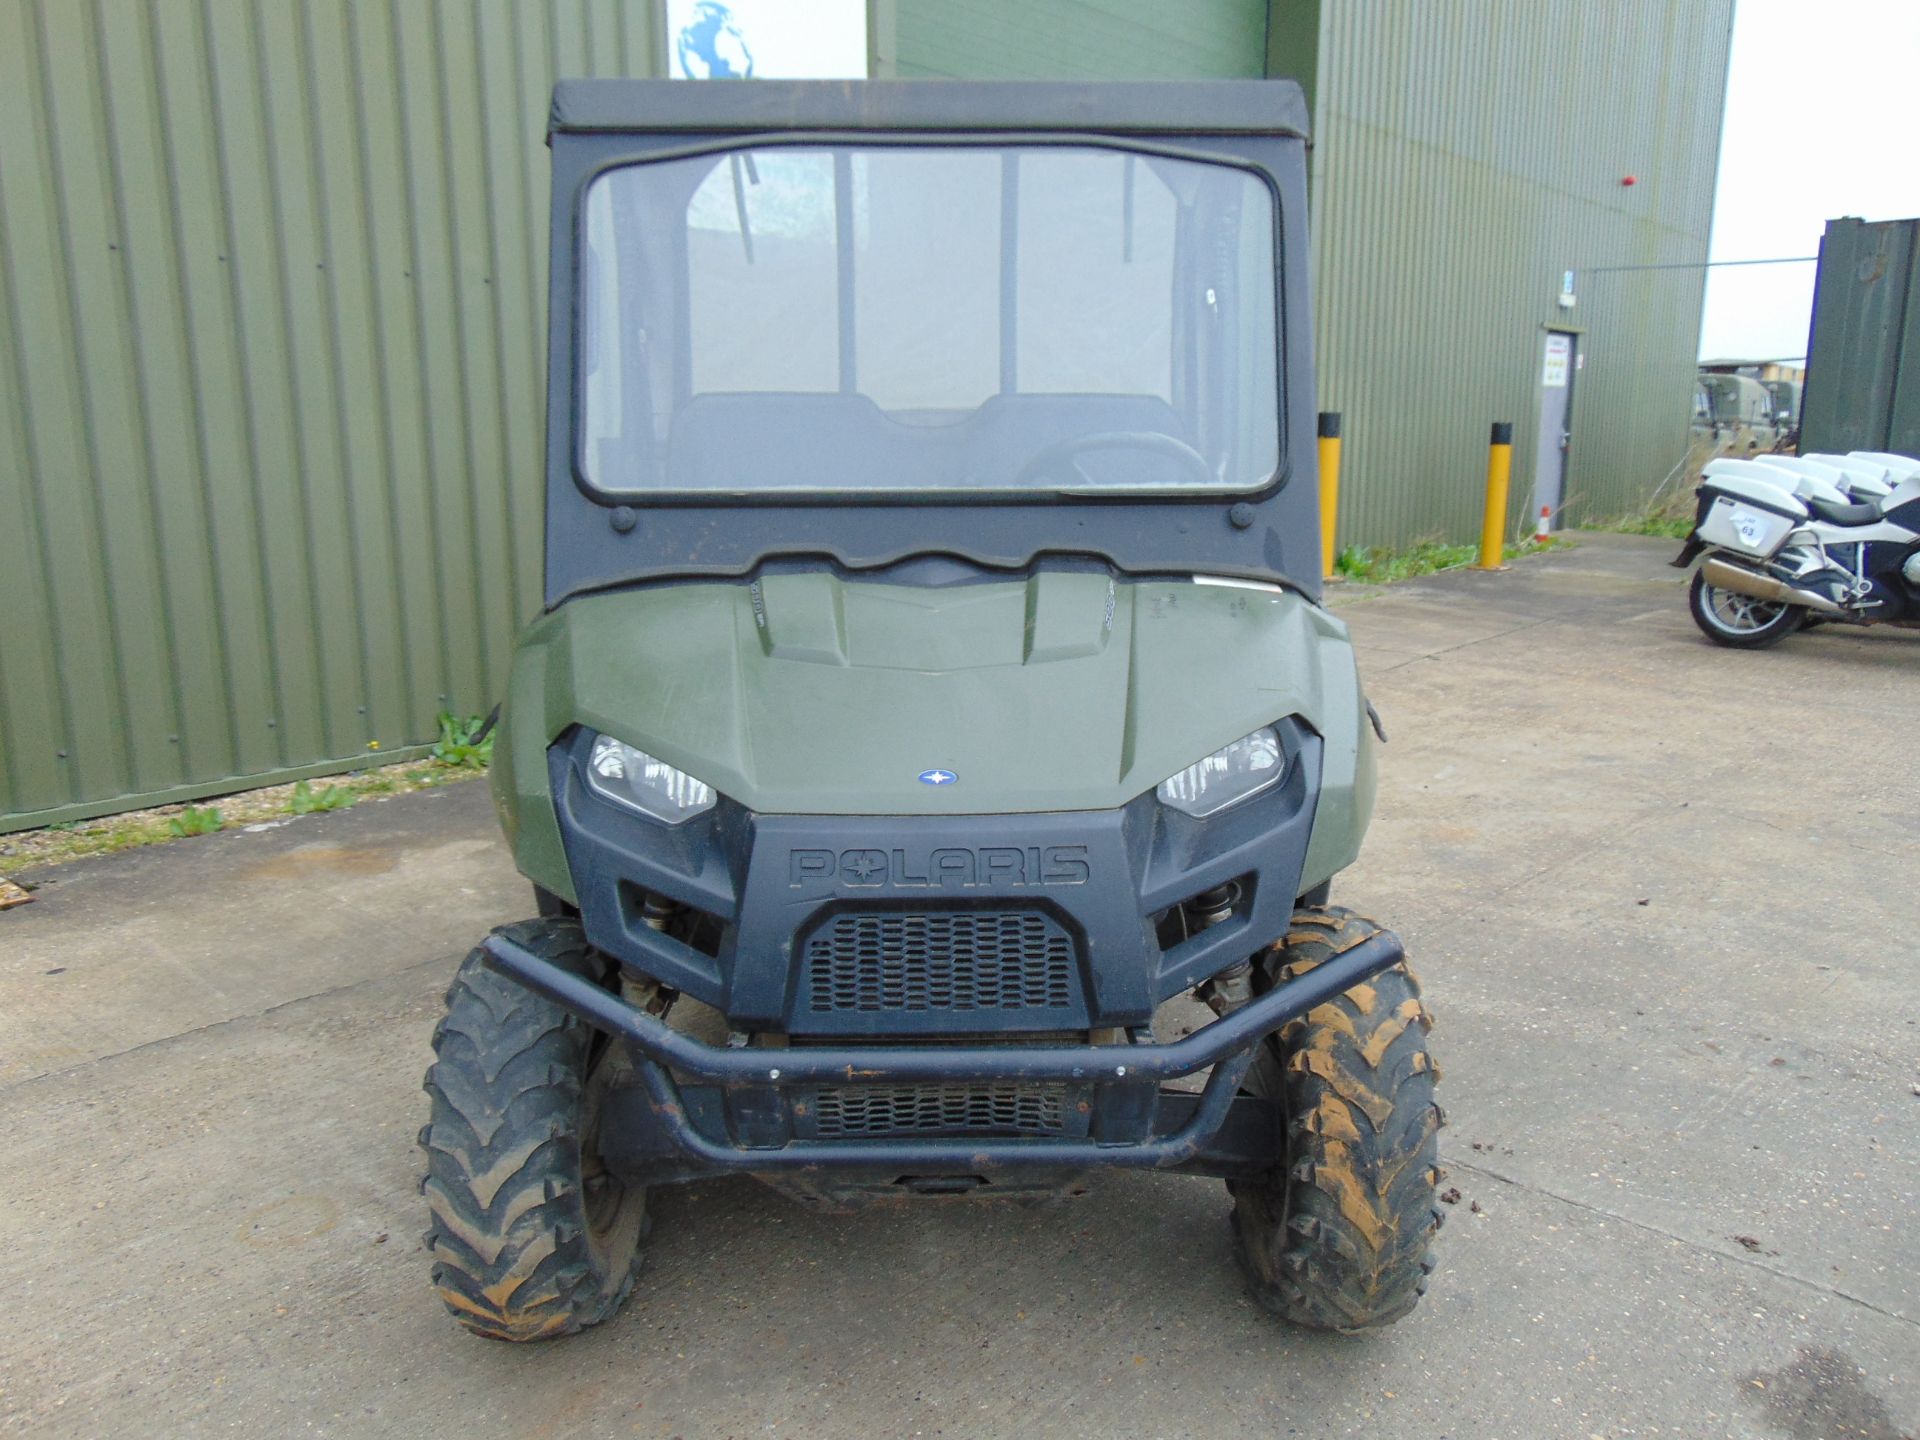 2011 Polaris Ranger 500 EFI 4x4 ATV SHOWING 1,561 HOURS - Image 2 of 15